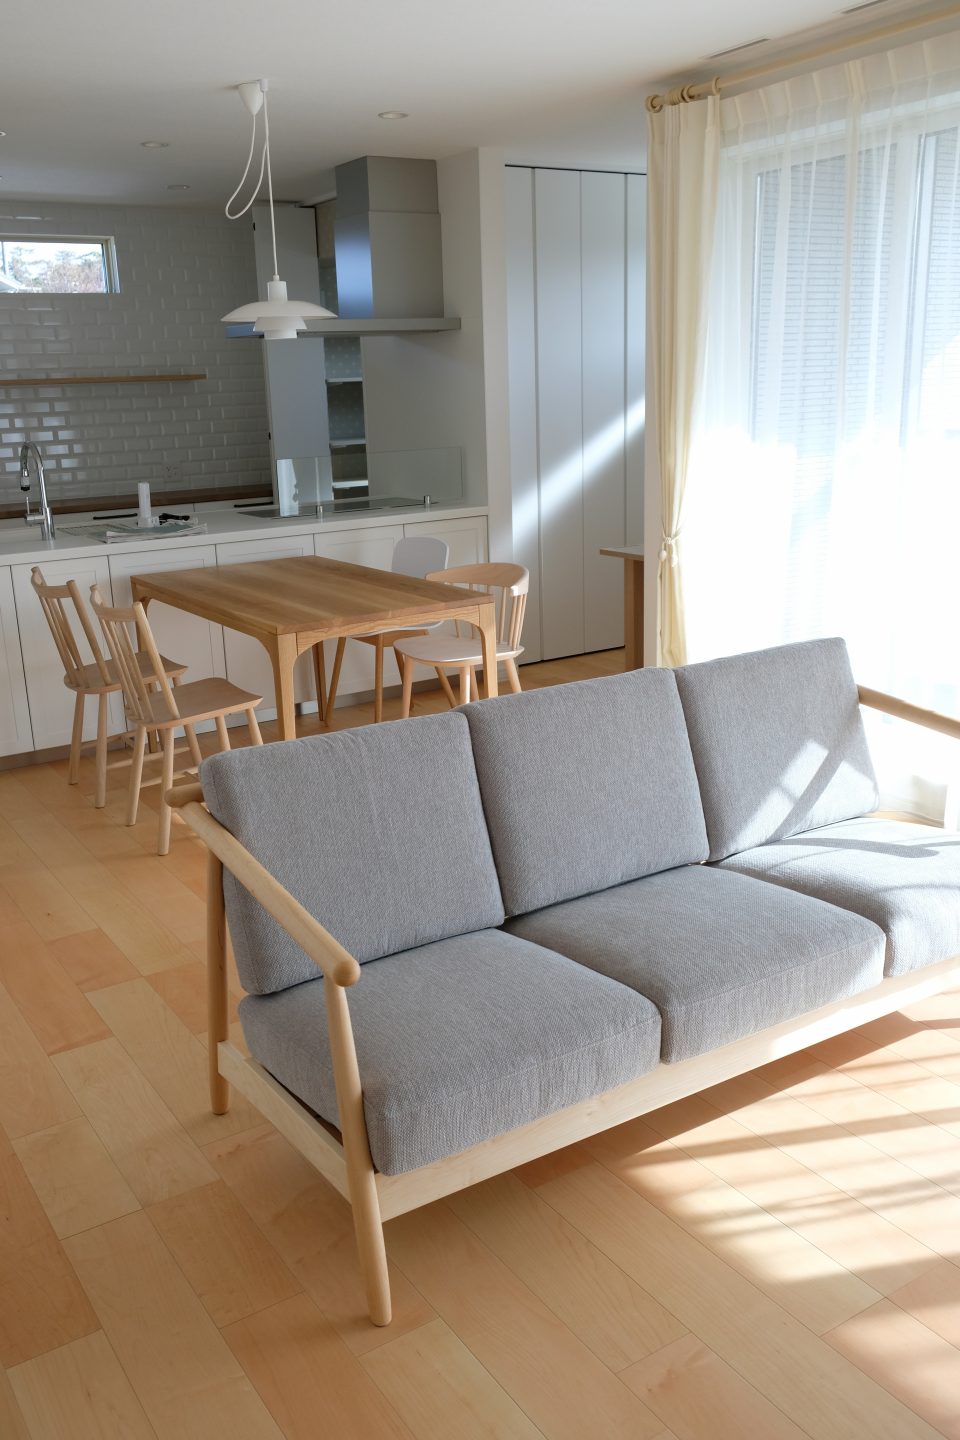 新潟市西区にナガノインテリのソファとオーク材のテーブルセットをお届けしました